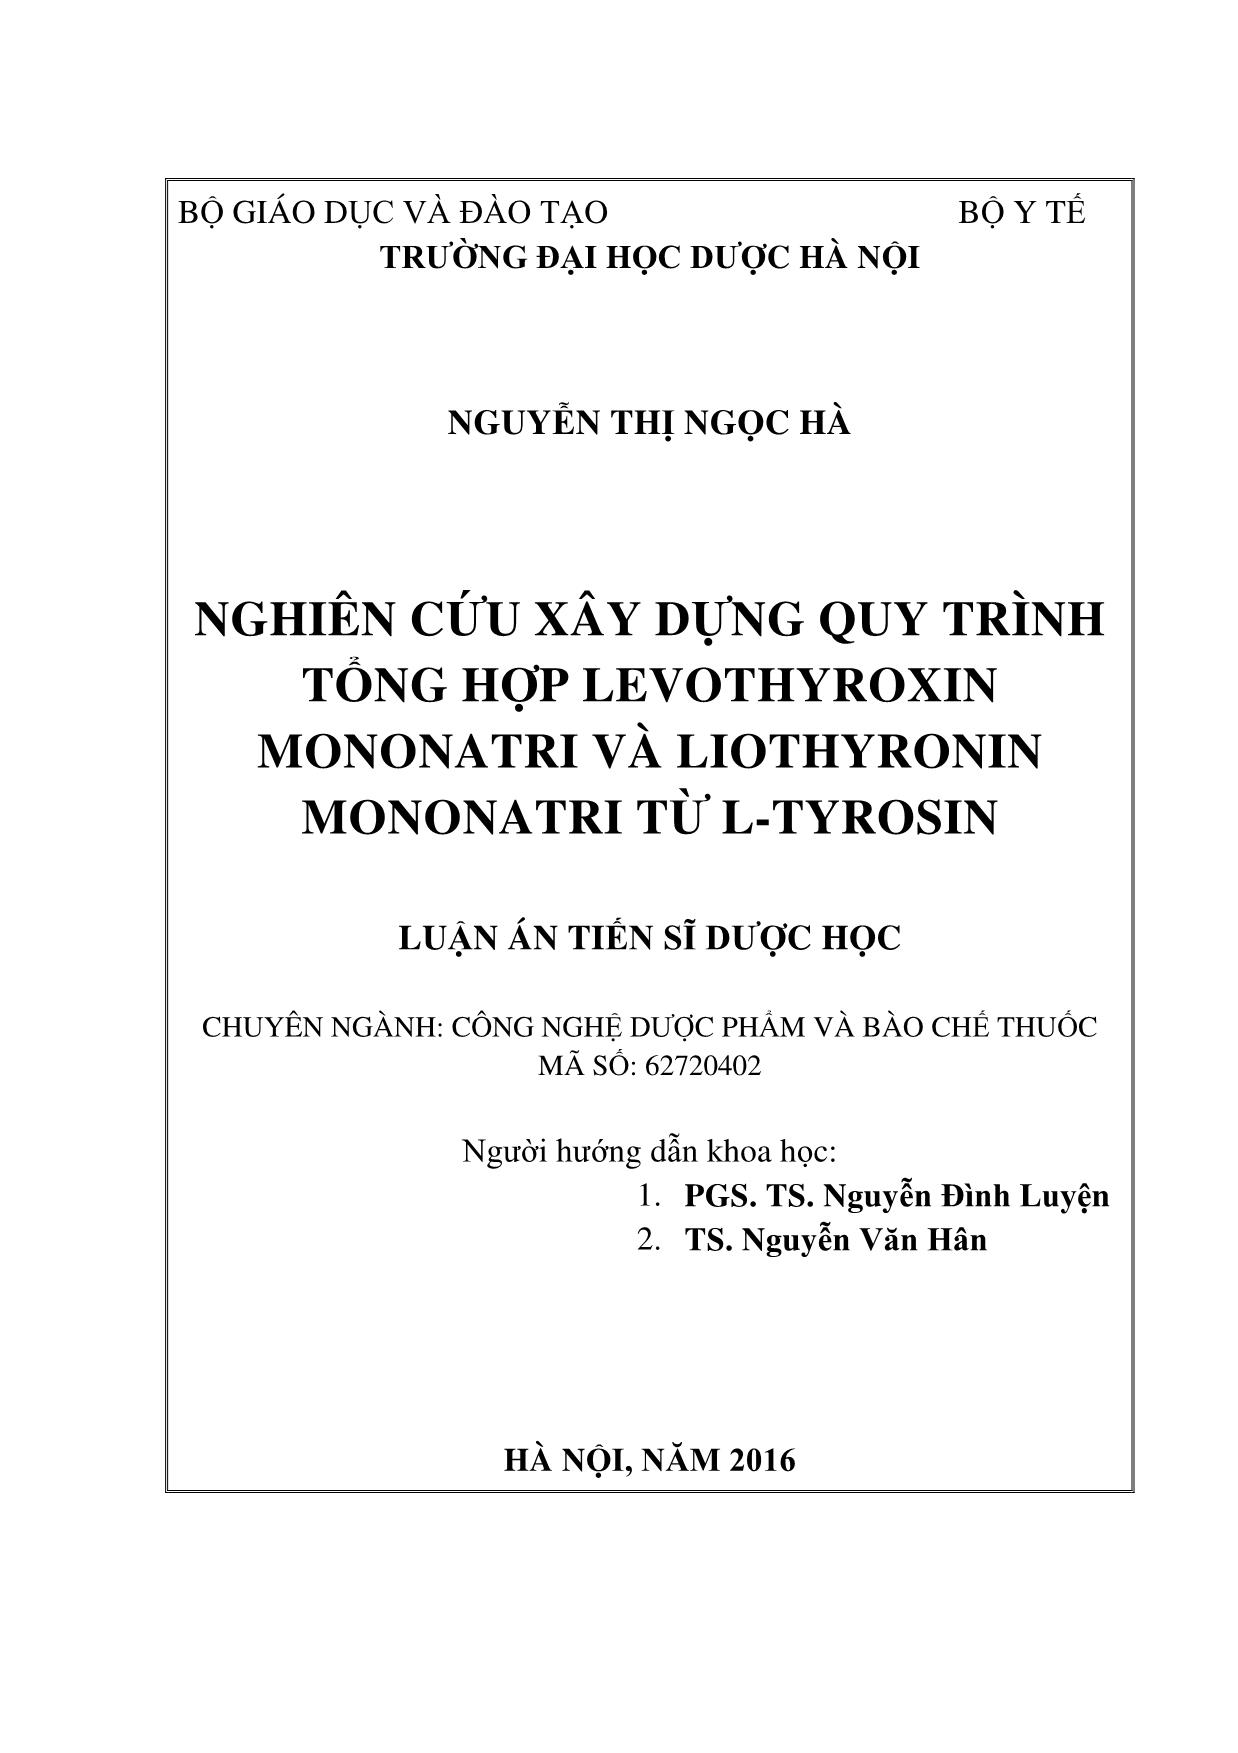 Luận án Nghiên cứu xây dựng quy trình tổng hợp levothyroxin mononatri và liothyronin mononatri từ l - Tyrosin trang 2